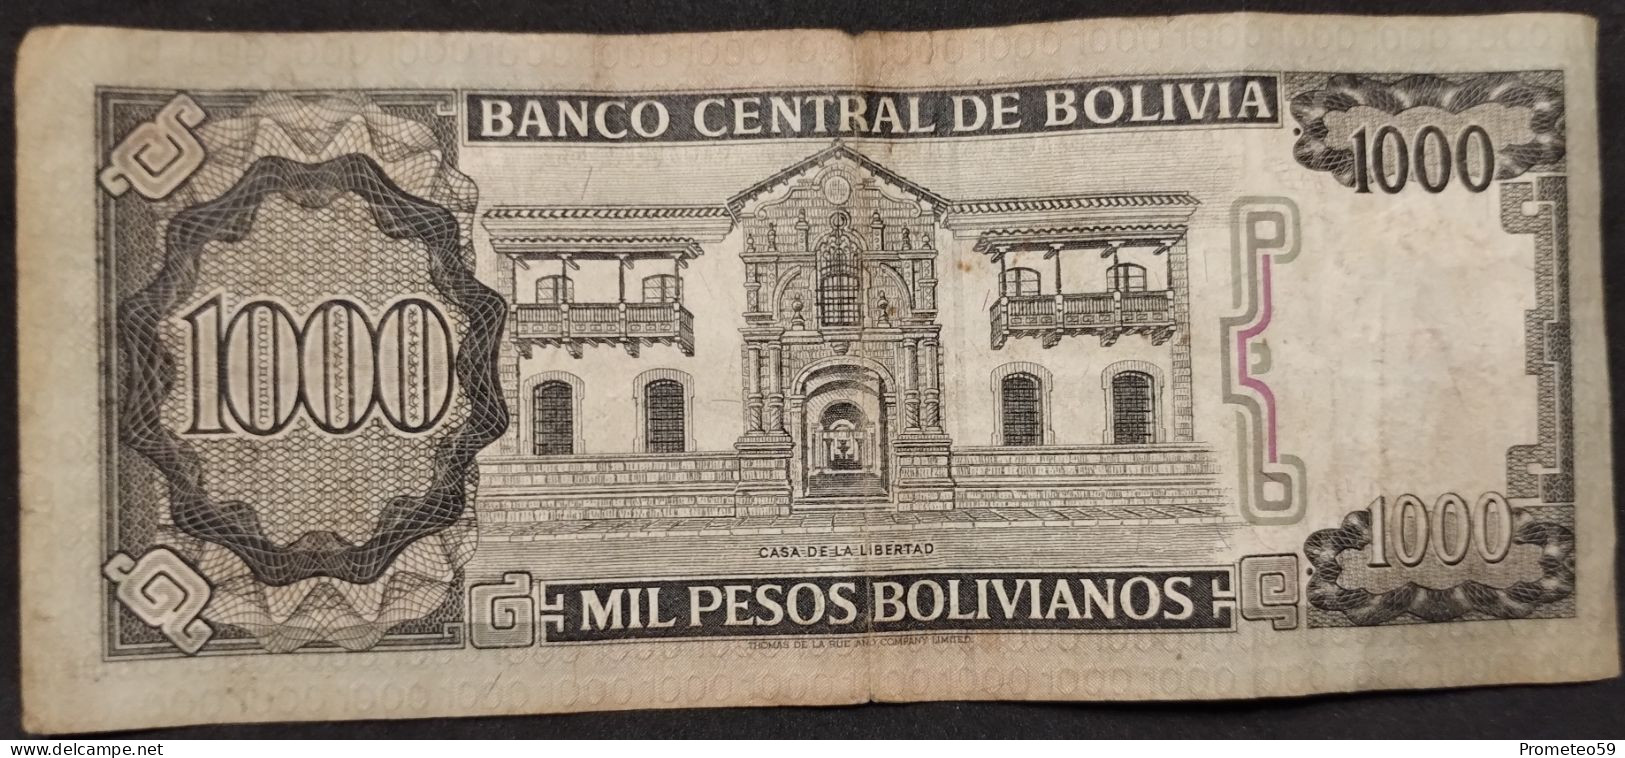 Bolivia – Billete De 1.000 Pesos Bolivianos – Año 1982 - Bolivia